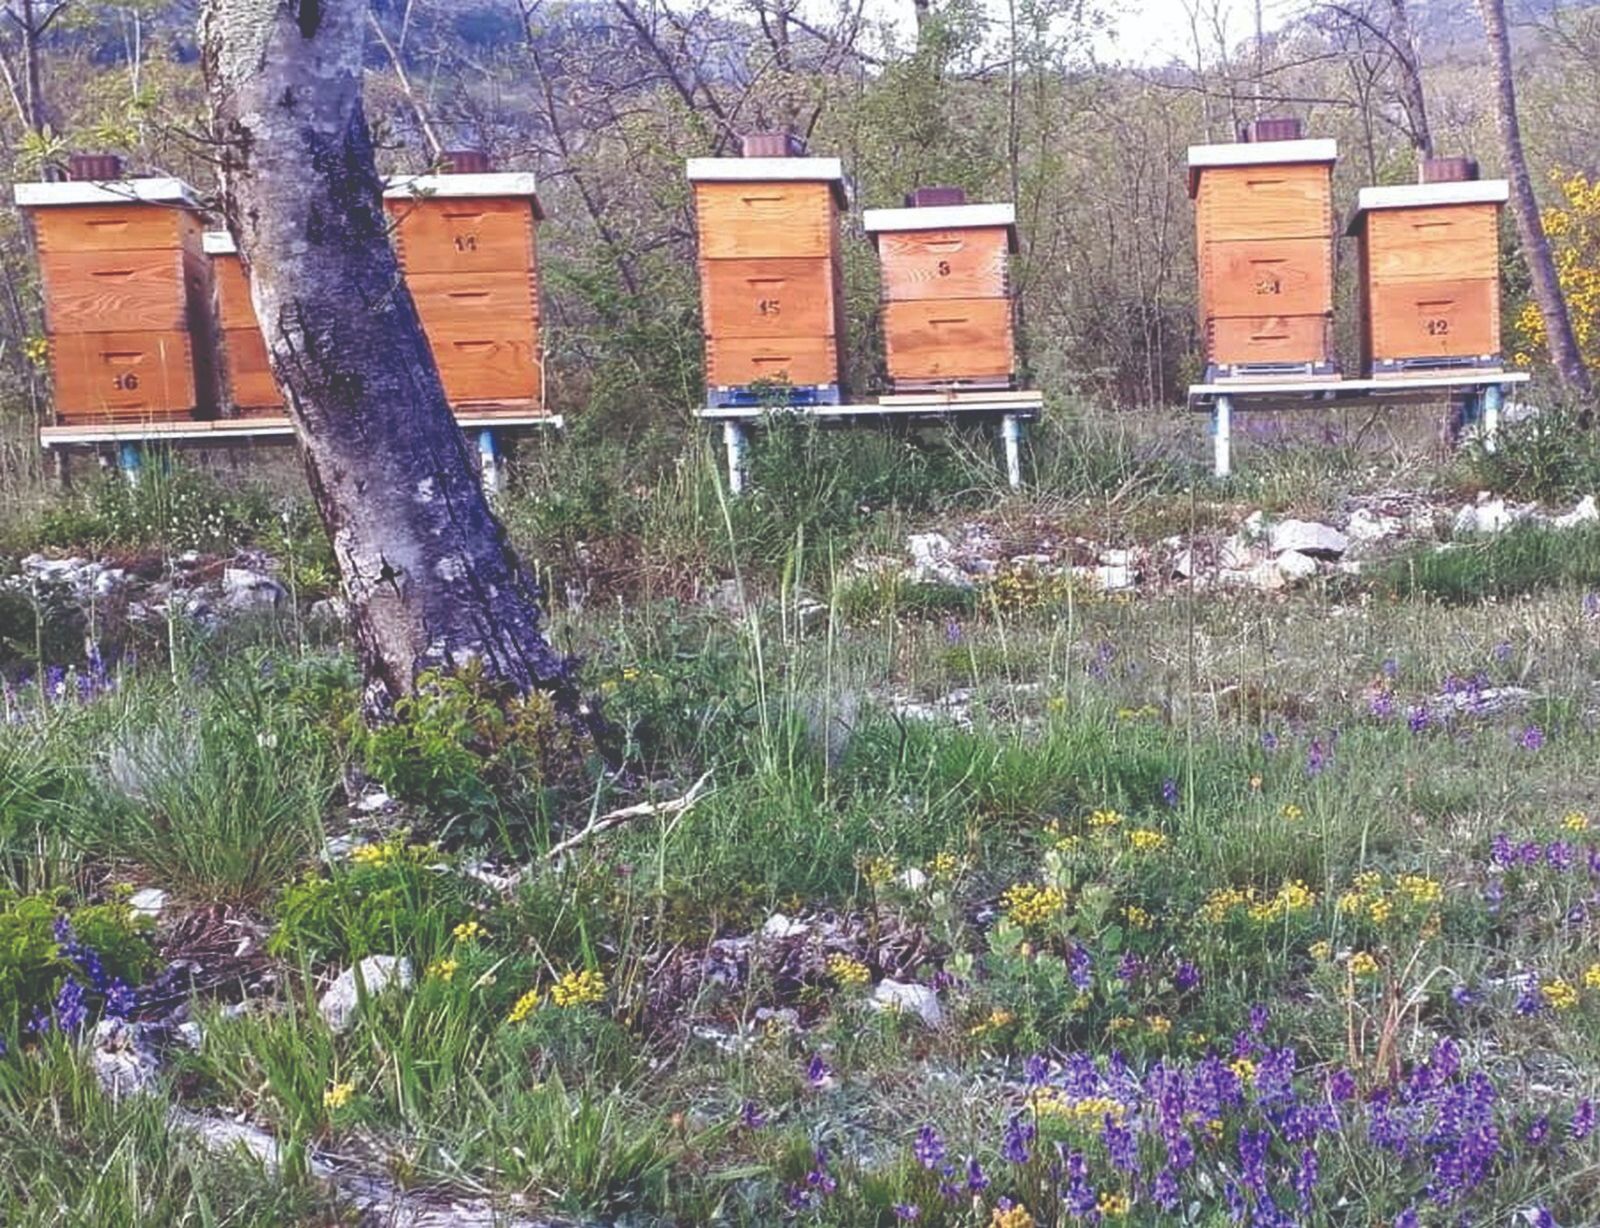 smještaj košnica nabava pčela